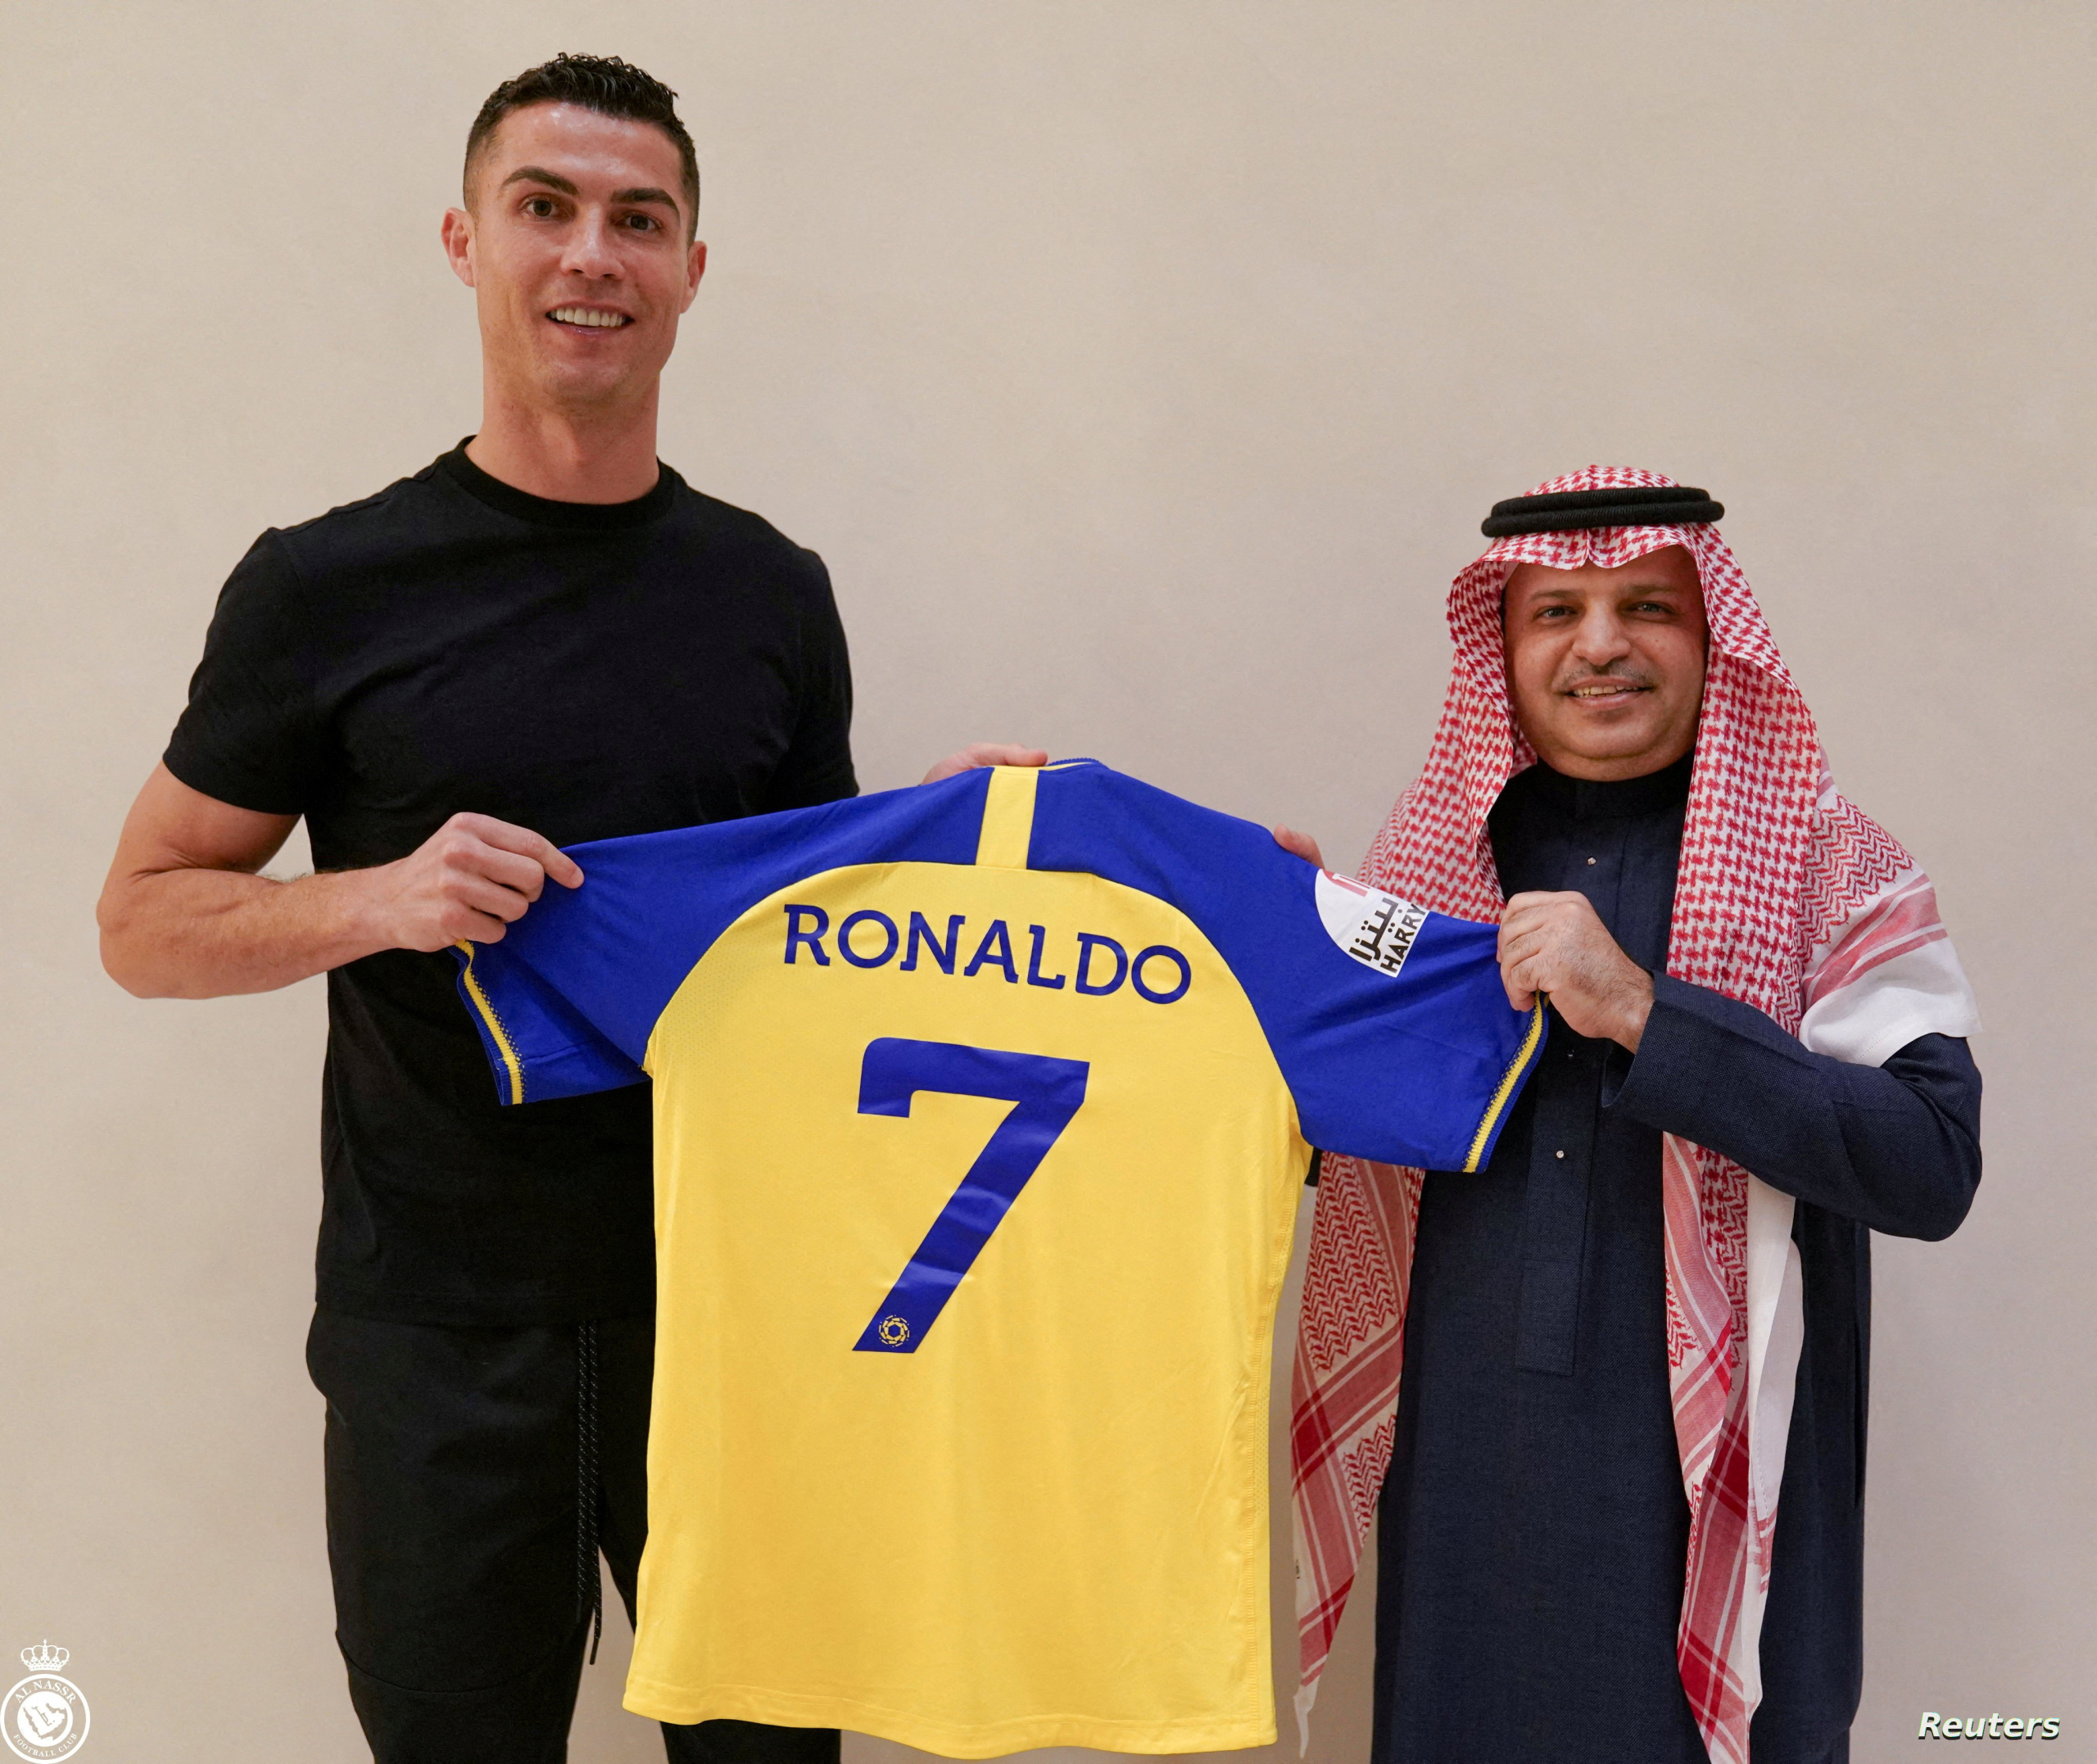 استقطاب نجوم كرة القدم.. مشروع سعودي “طويل الأمد” لمنافسة الدوريات الأشهر عالميا